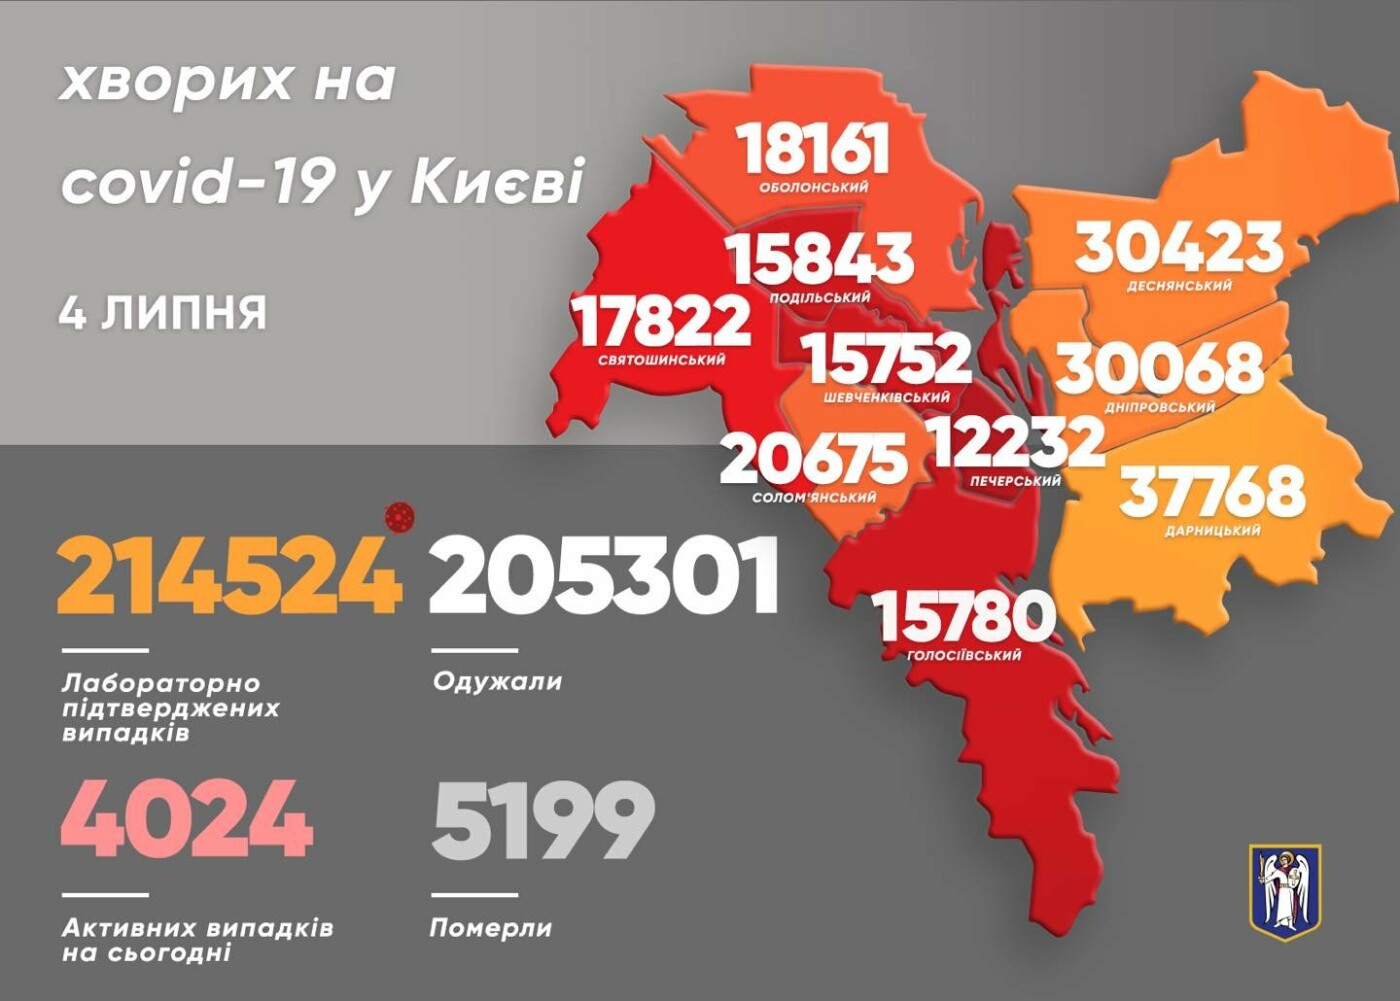 Коронавирус в Киеве: появилась статистика COVID-19 по районам на 4 июля